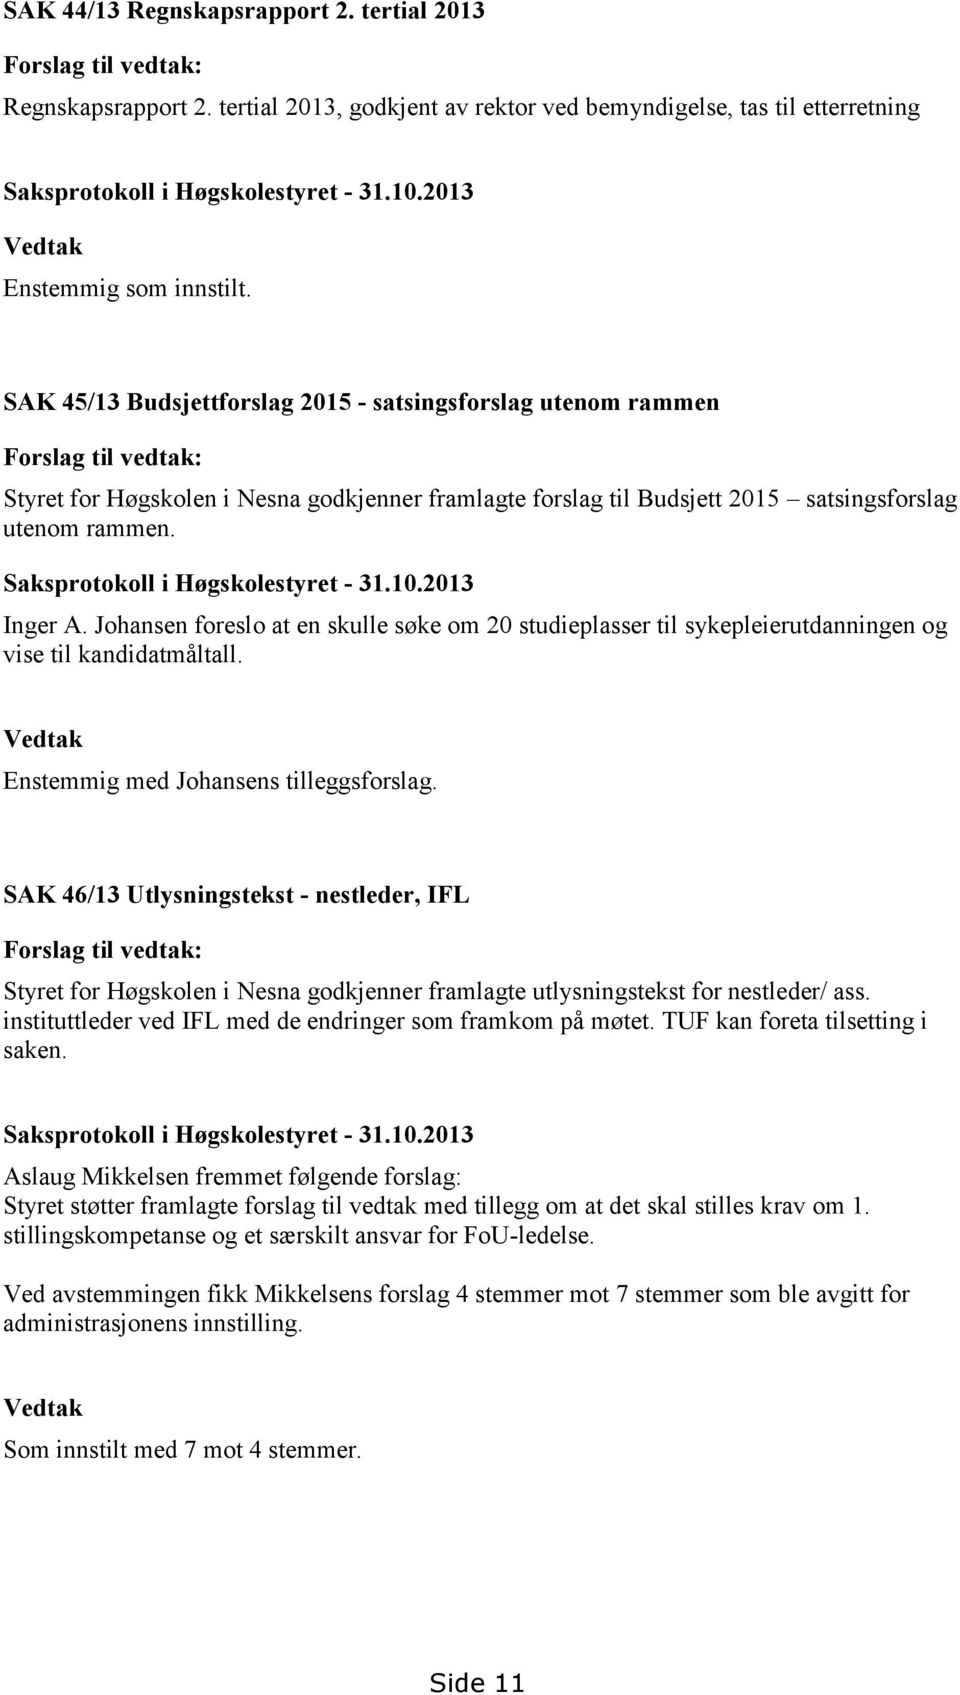 SAK 45/13 Budsjettforslag 2015 - satsingsforslag utenom rammen Forslag til vedtak: Styret for Høgskolen i Nesna godkjenner framlagte forslag til Budsjett 2015 satsingsforslag utenom rammen.